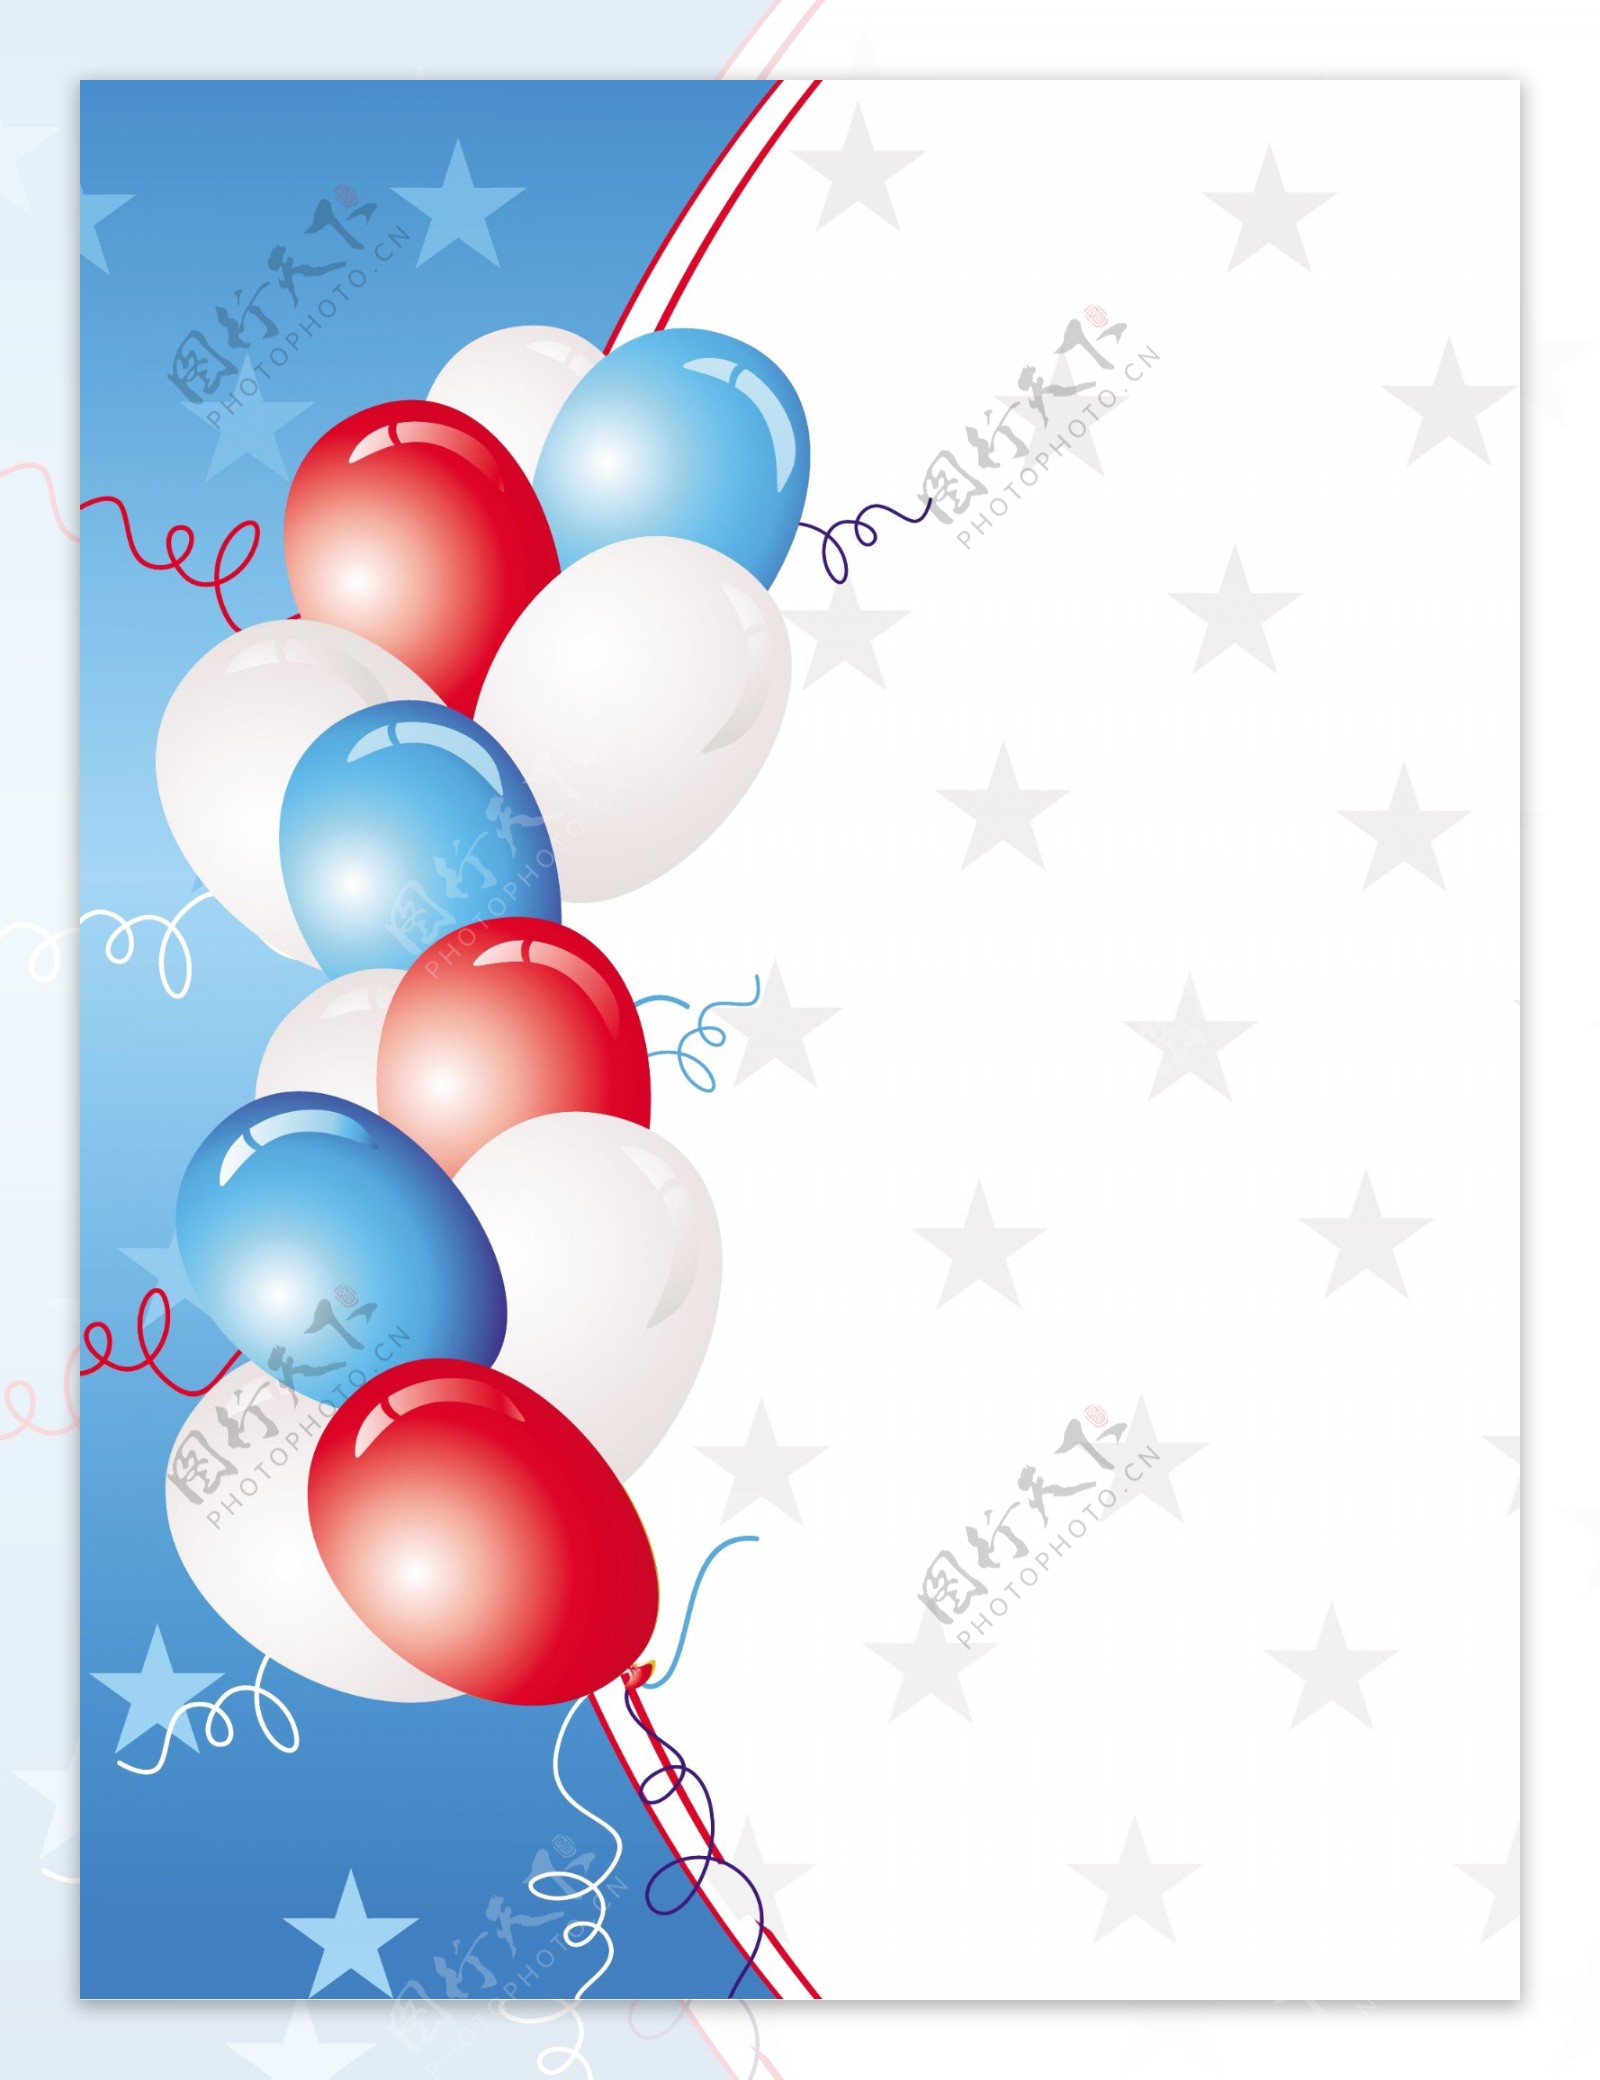 白色和蓝色的气球的星星背景